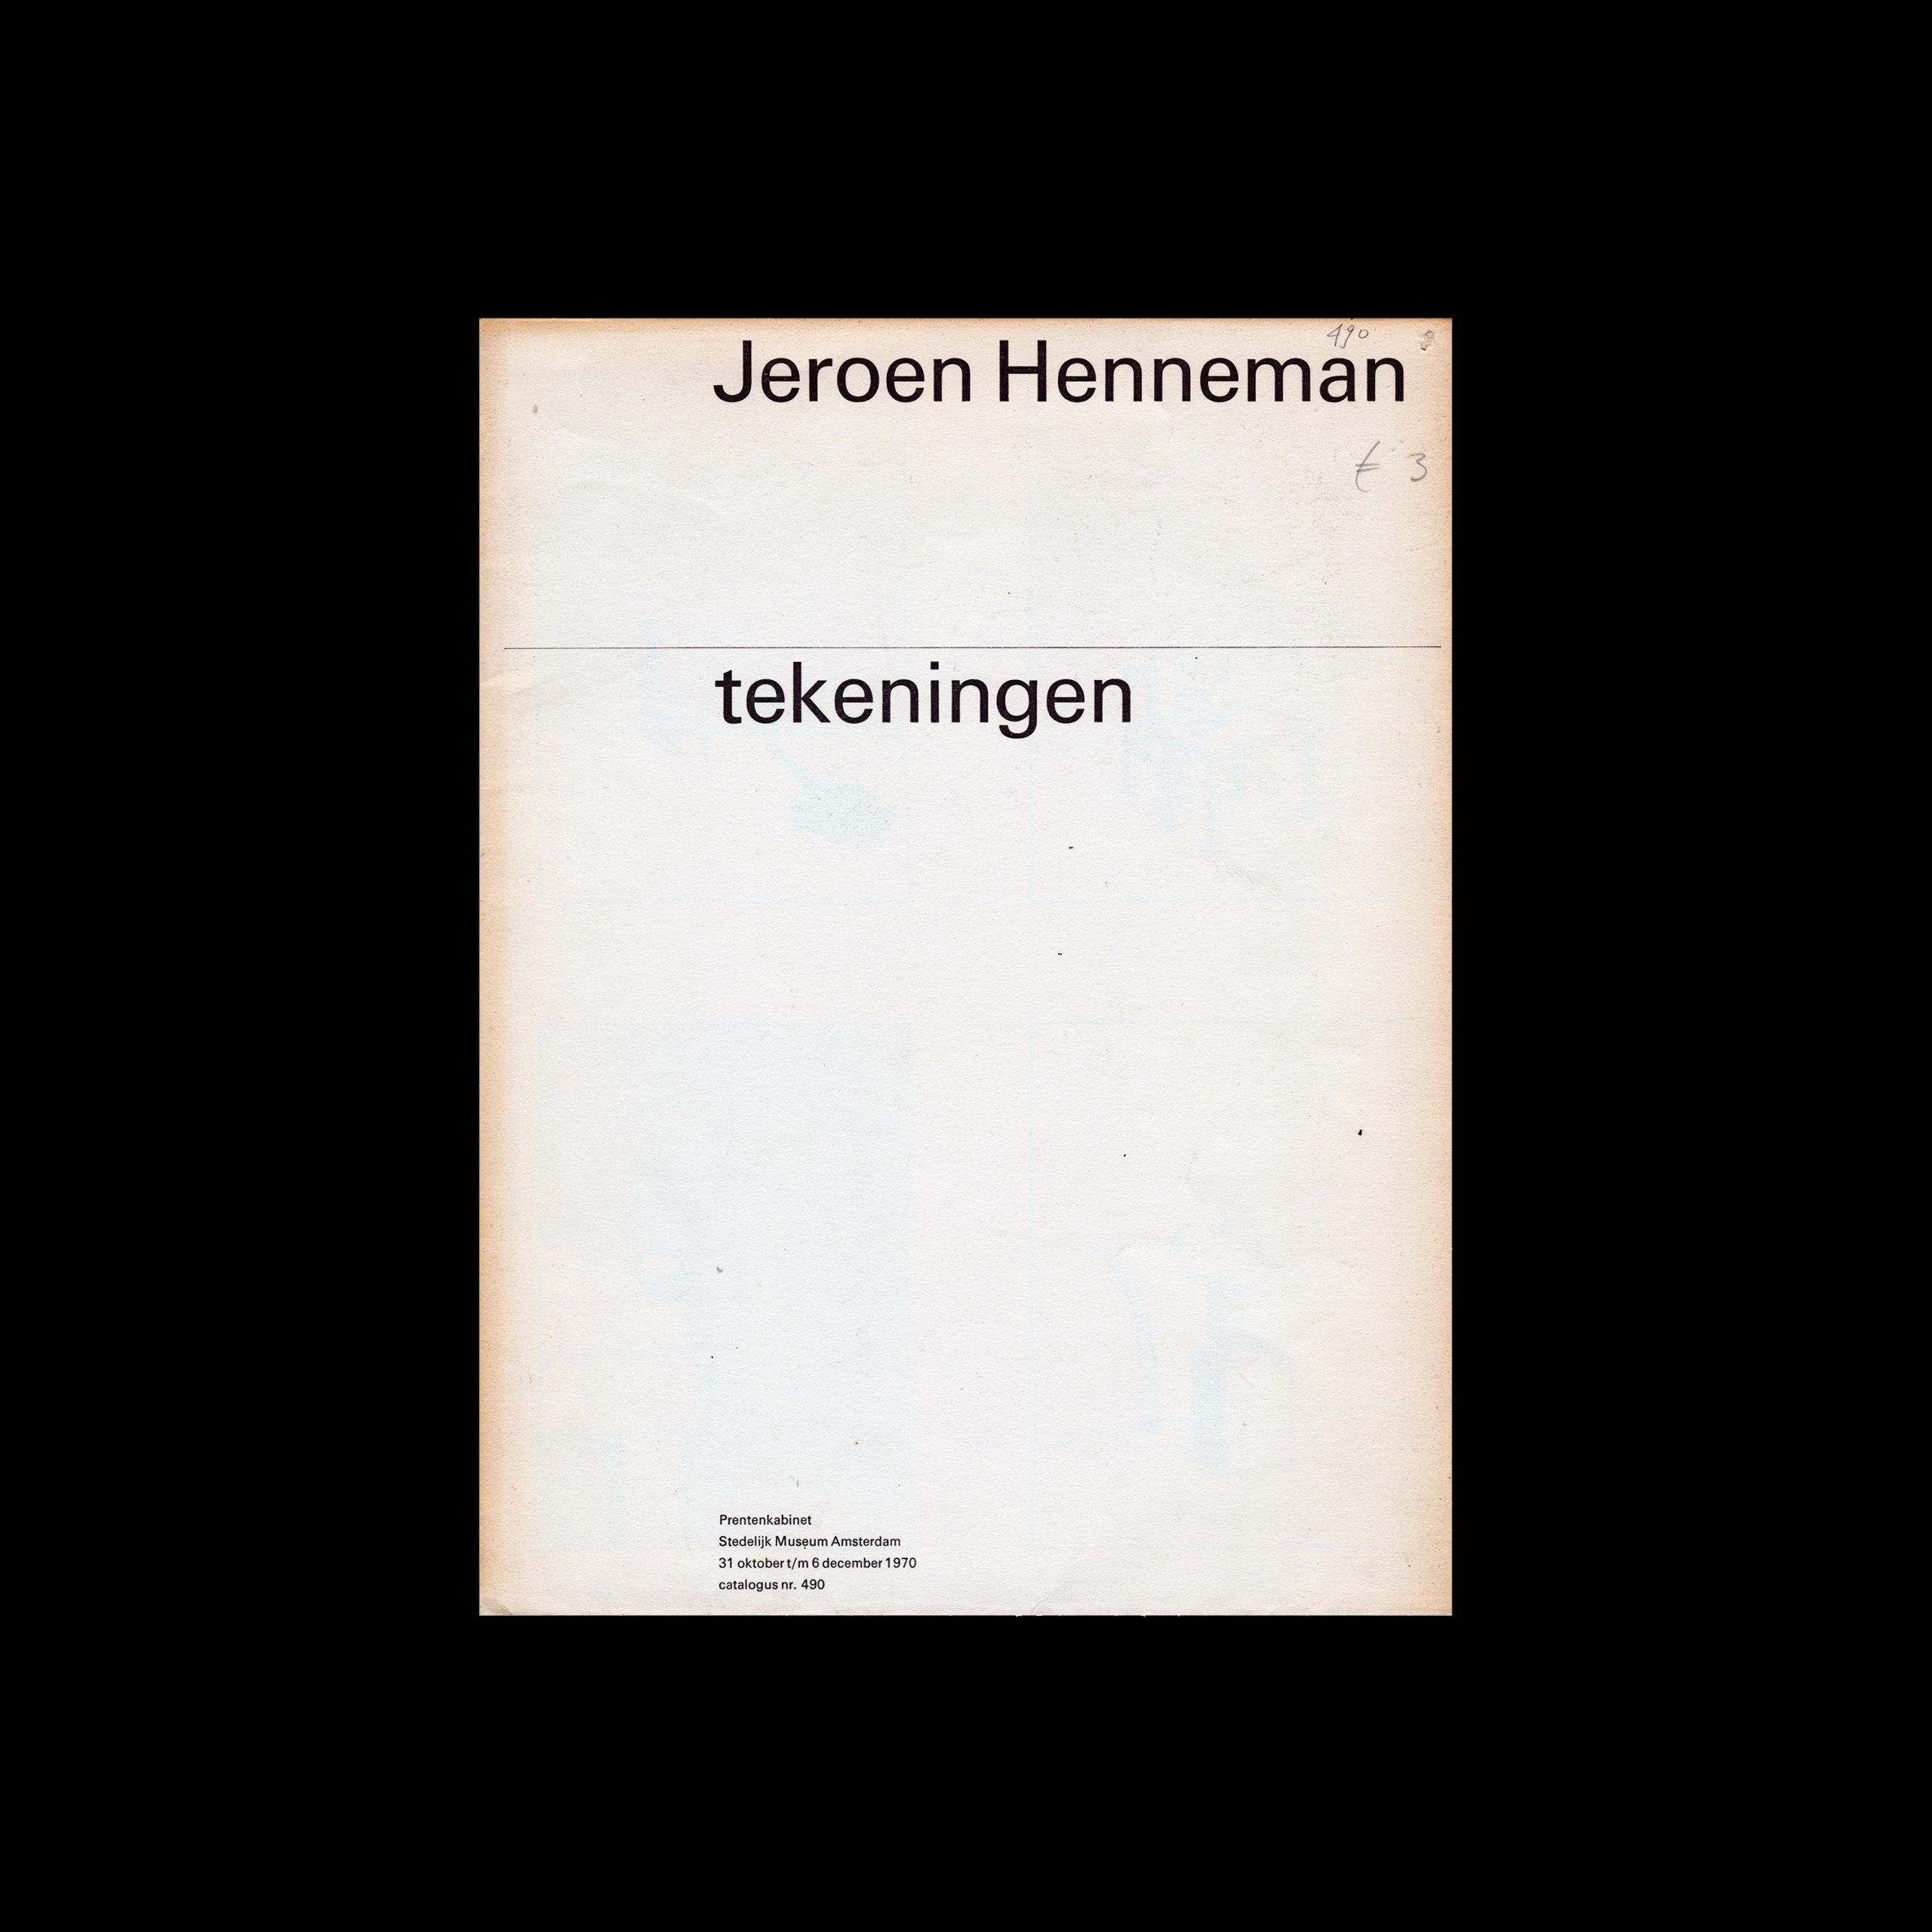 Jeroen Henneman, Stedelijk Museum, Amsterdam, 1970 designed by Wim Crouwel and Jolijn van de Wouw (Total Design)